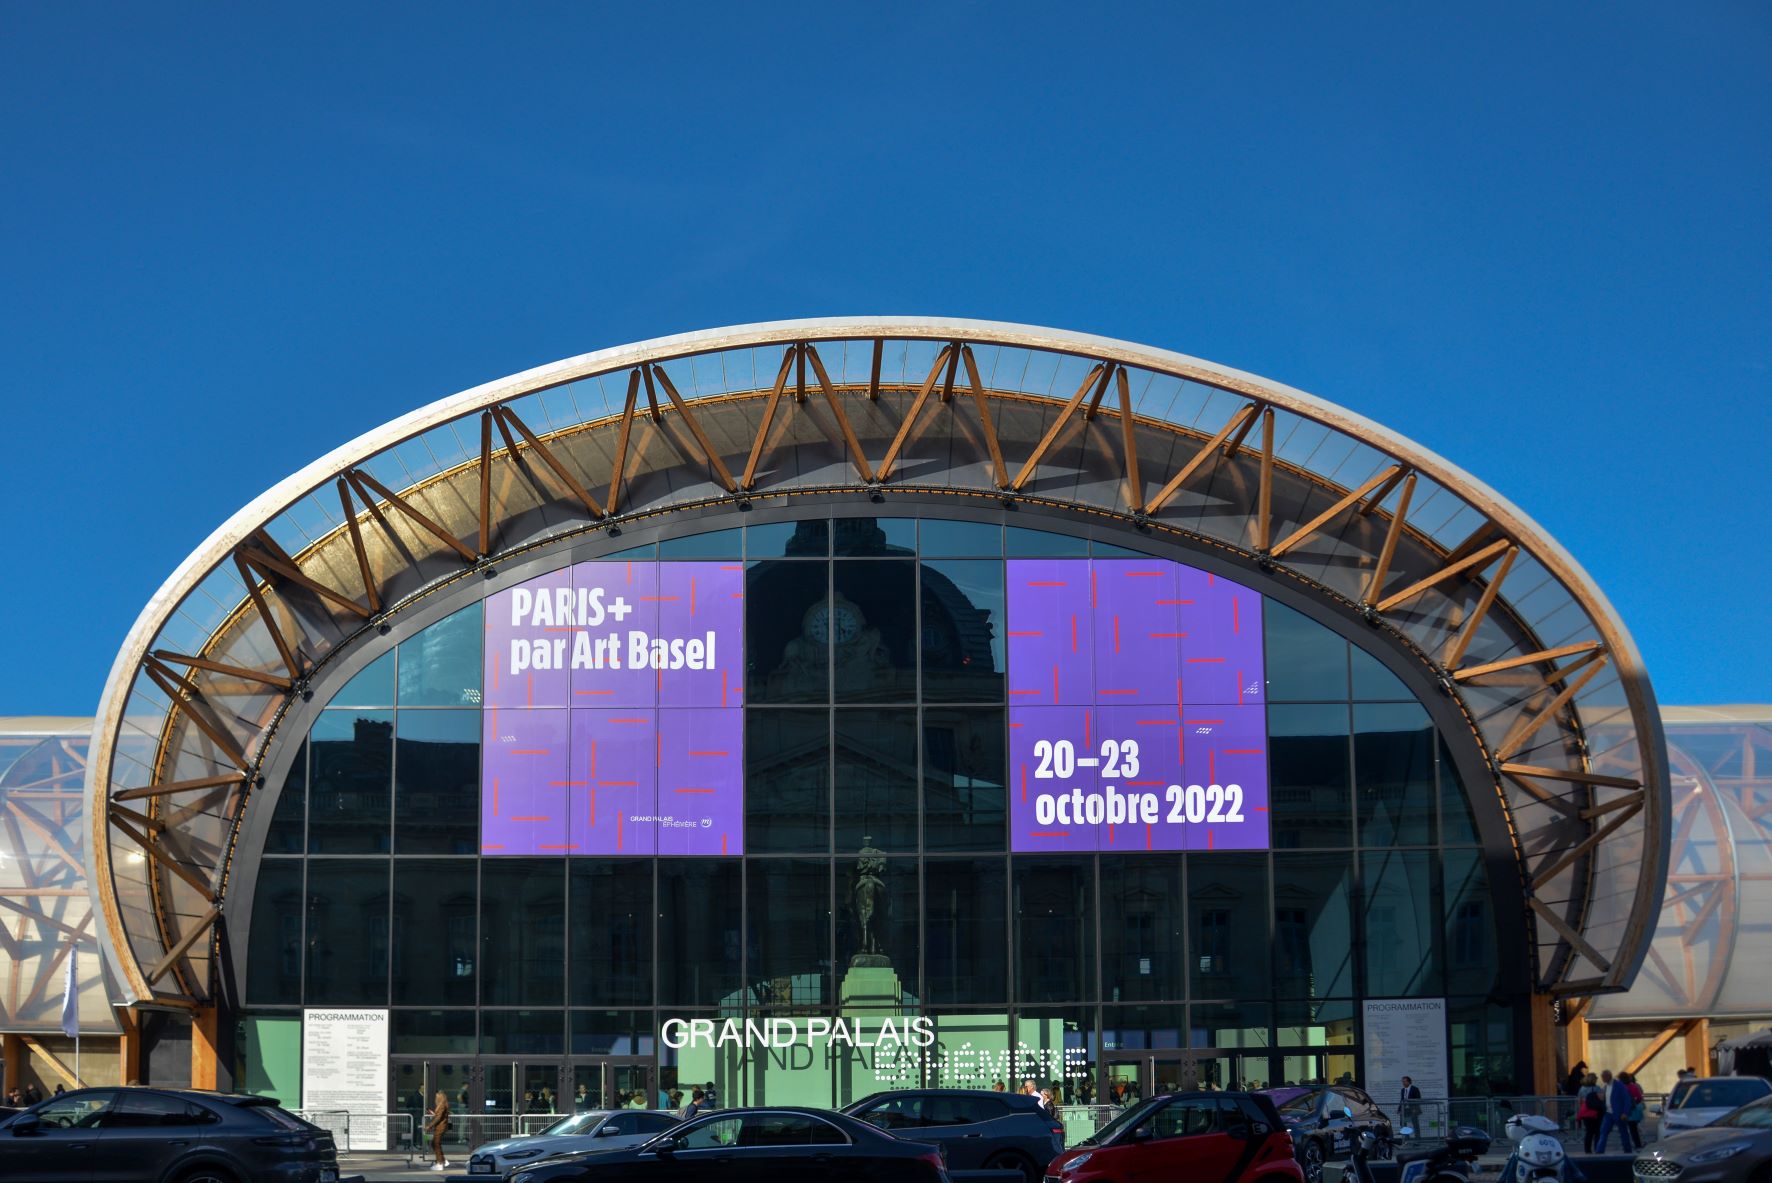 Le Grand Palais Ephémère accueille Paris+ par Art Basel 2022, du 20 au 23 octobre 2022.